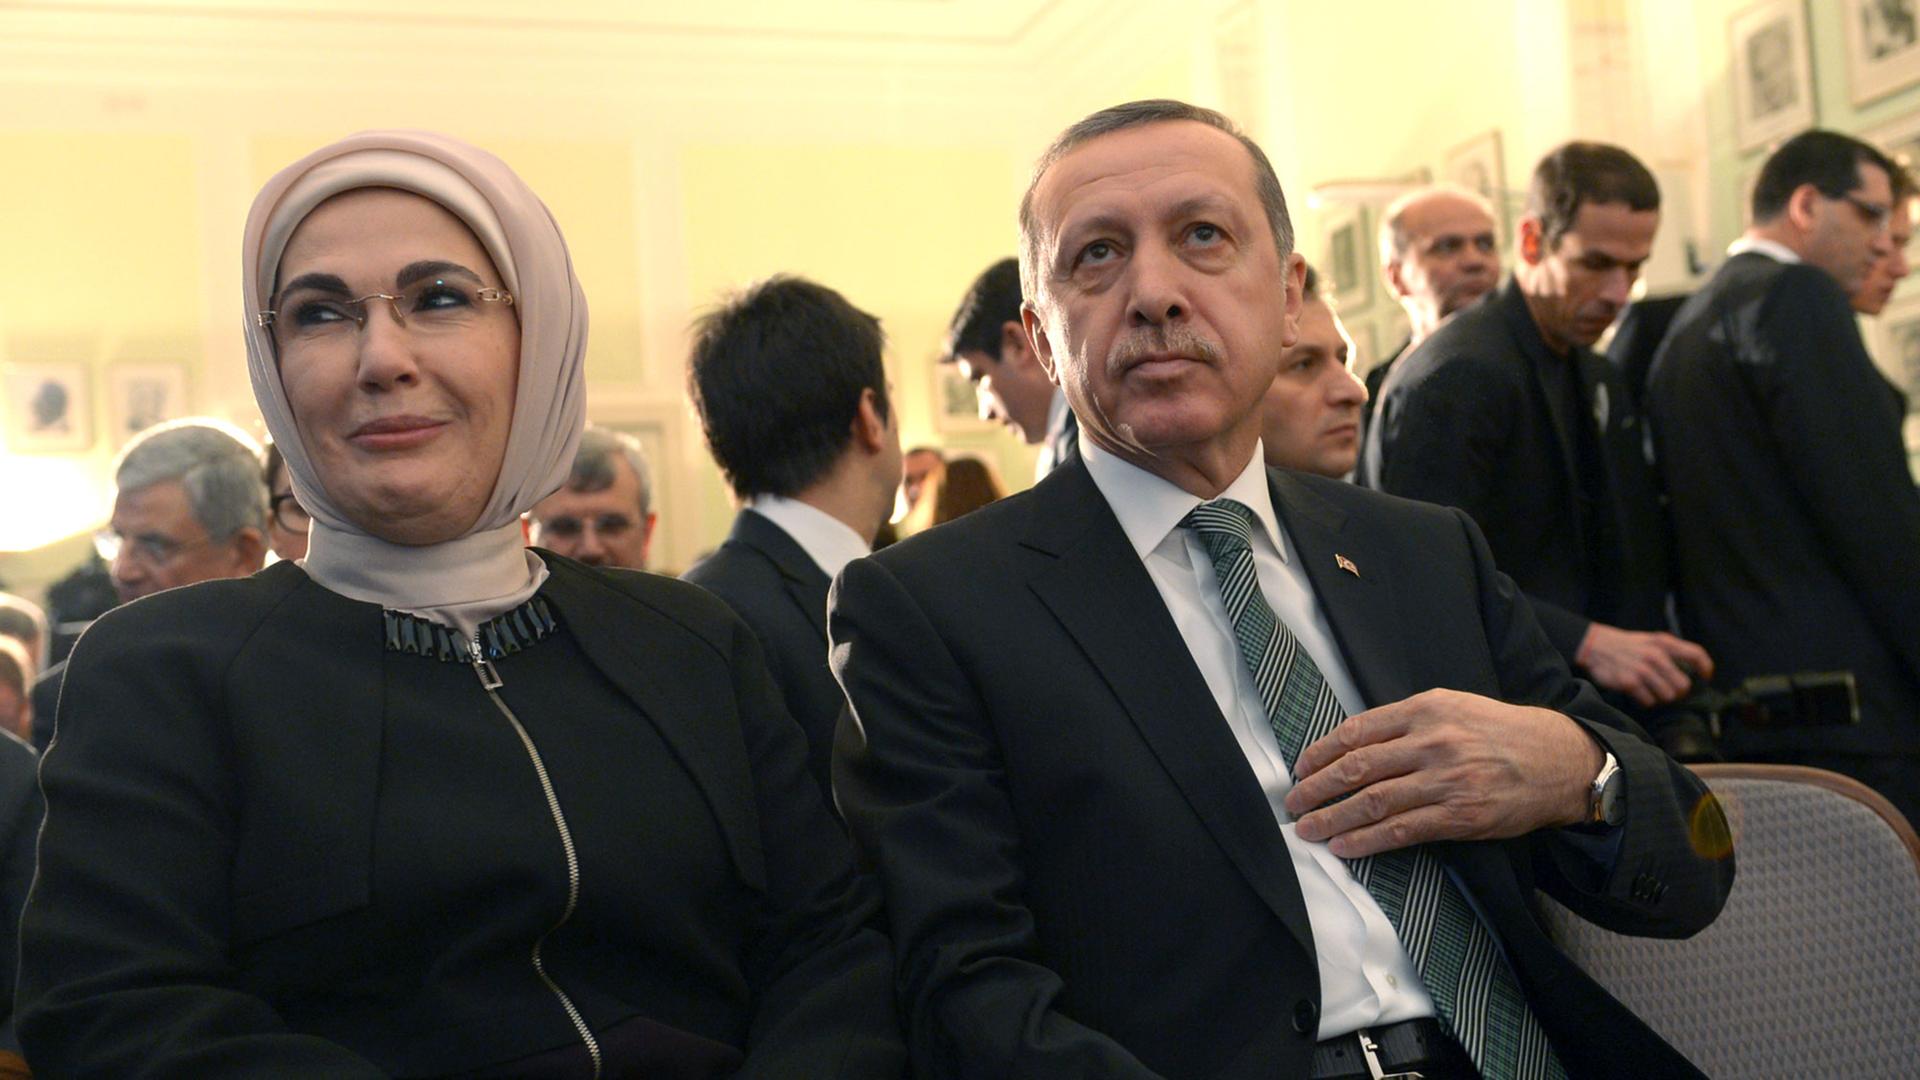 Der türkische Ministerpräsident Recep Tayyip Erdogan und seine Ehefrau Emine besuchen am 04.02.2014 die Deutsche Gesellschaft für Auswärtige Politik in Berlin. Erdogan hielt dort einen Vortrag zum Thema "Die Türkei, Europa und die Welt im 21. Jahrhundert".